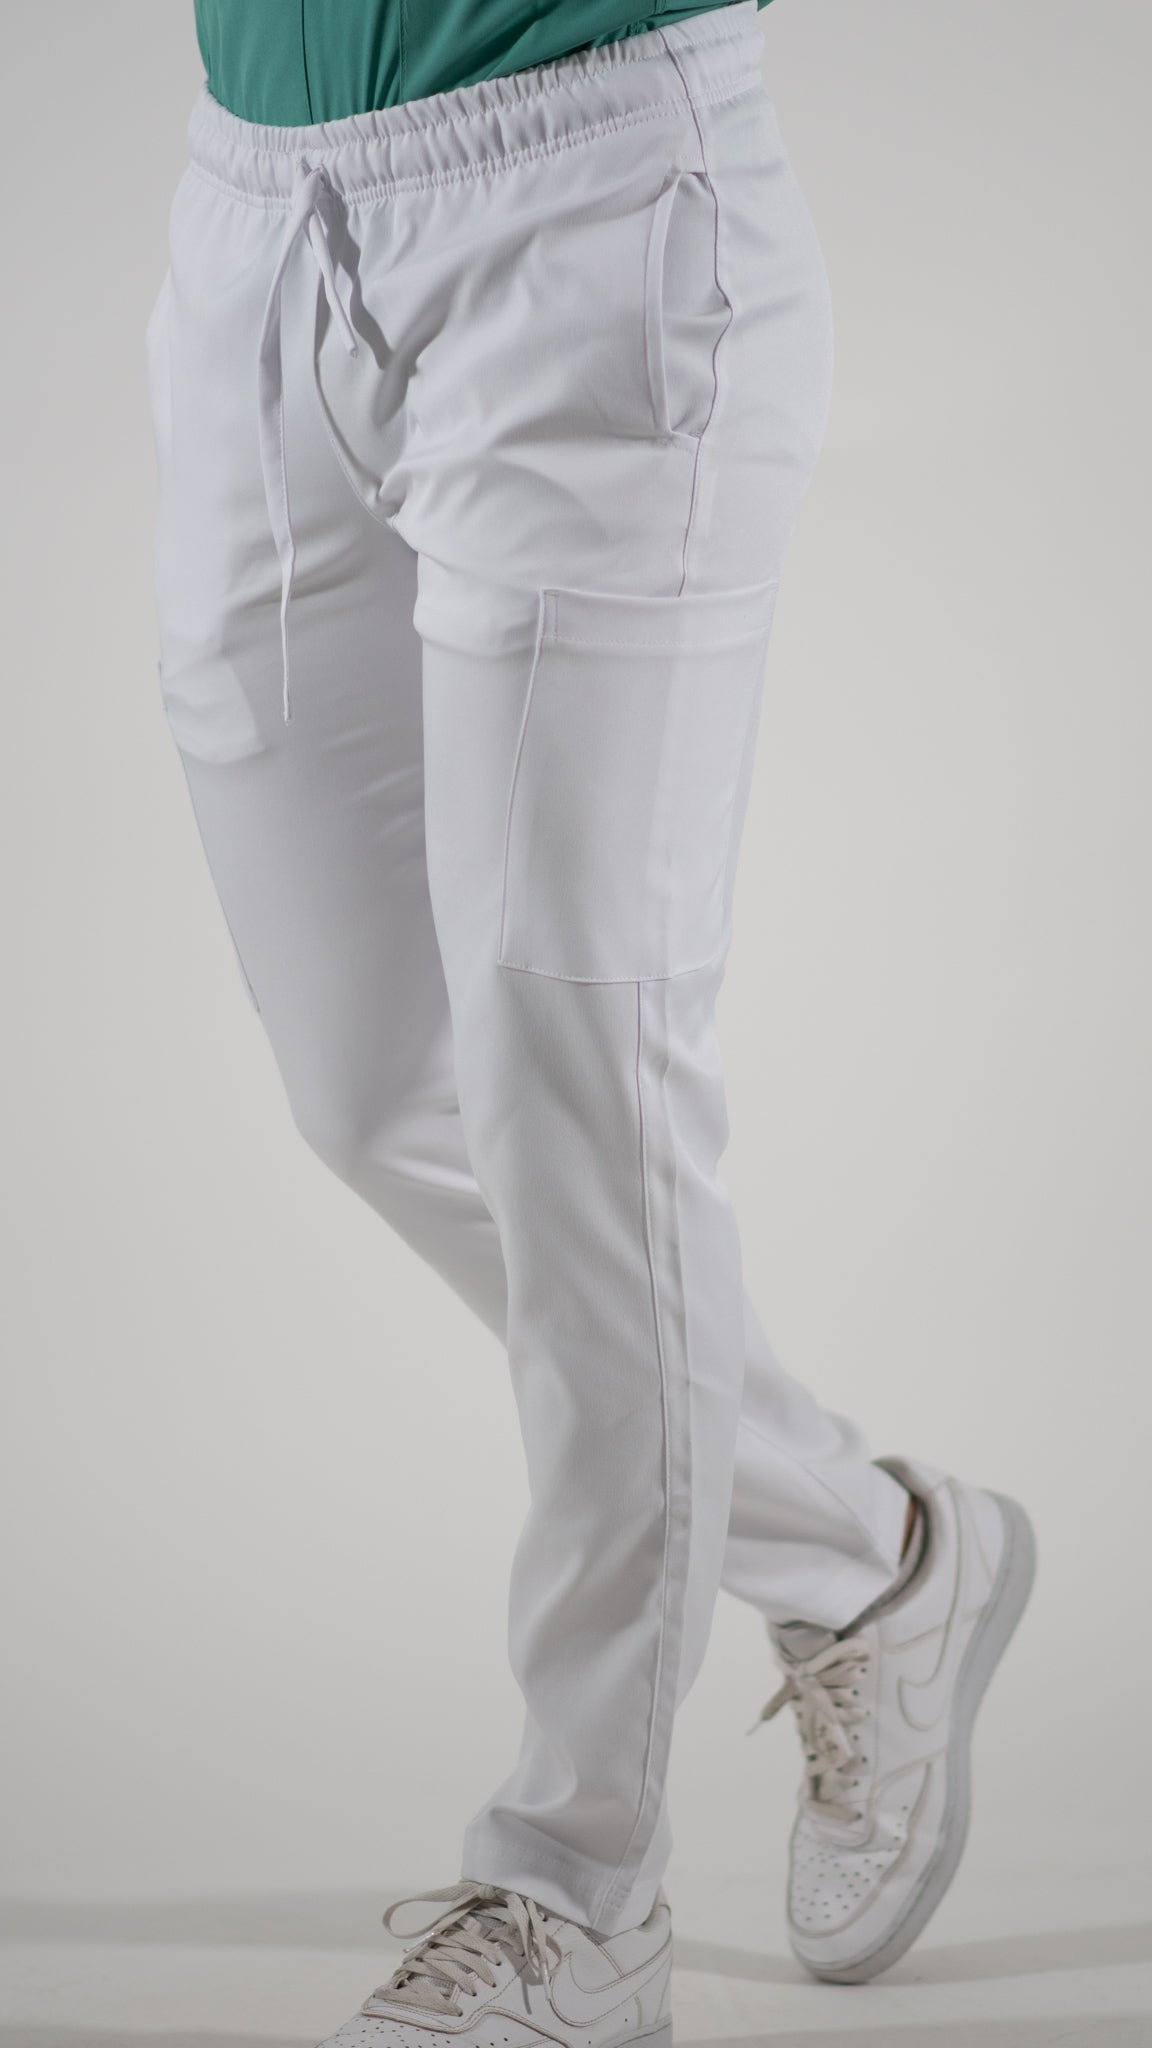 Pantalon Hombre 5 bolsas alviero antifluido Blanco.